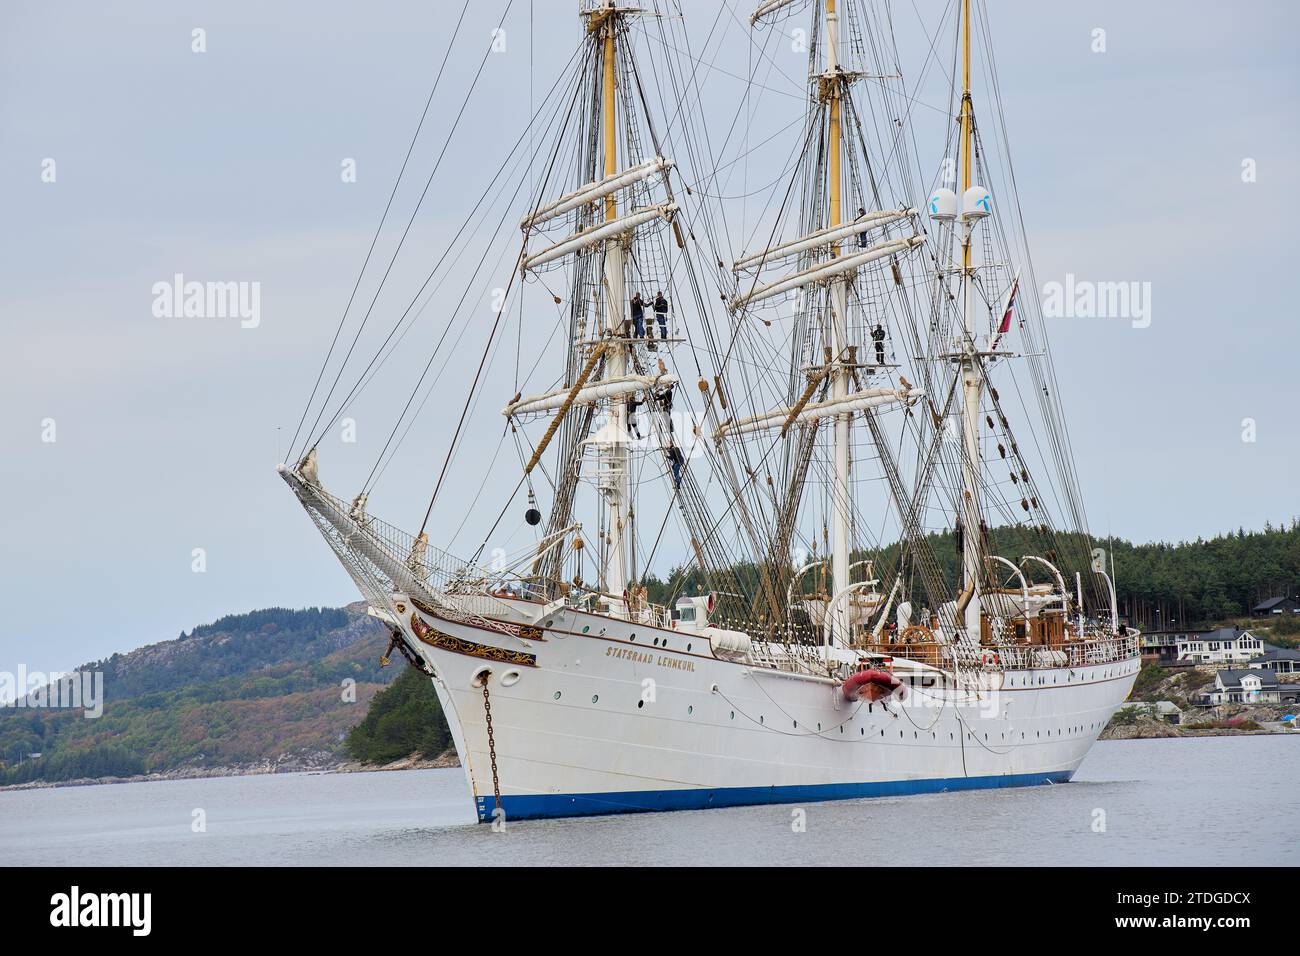 Statsraad Lemkuhl un voilier barque à trois mâts Banque D'Images